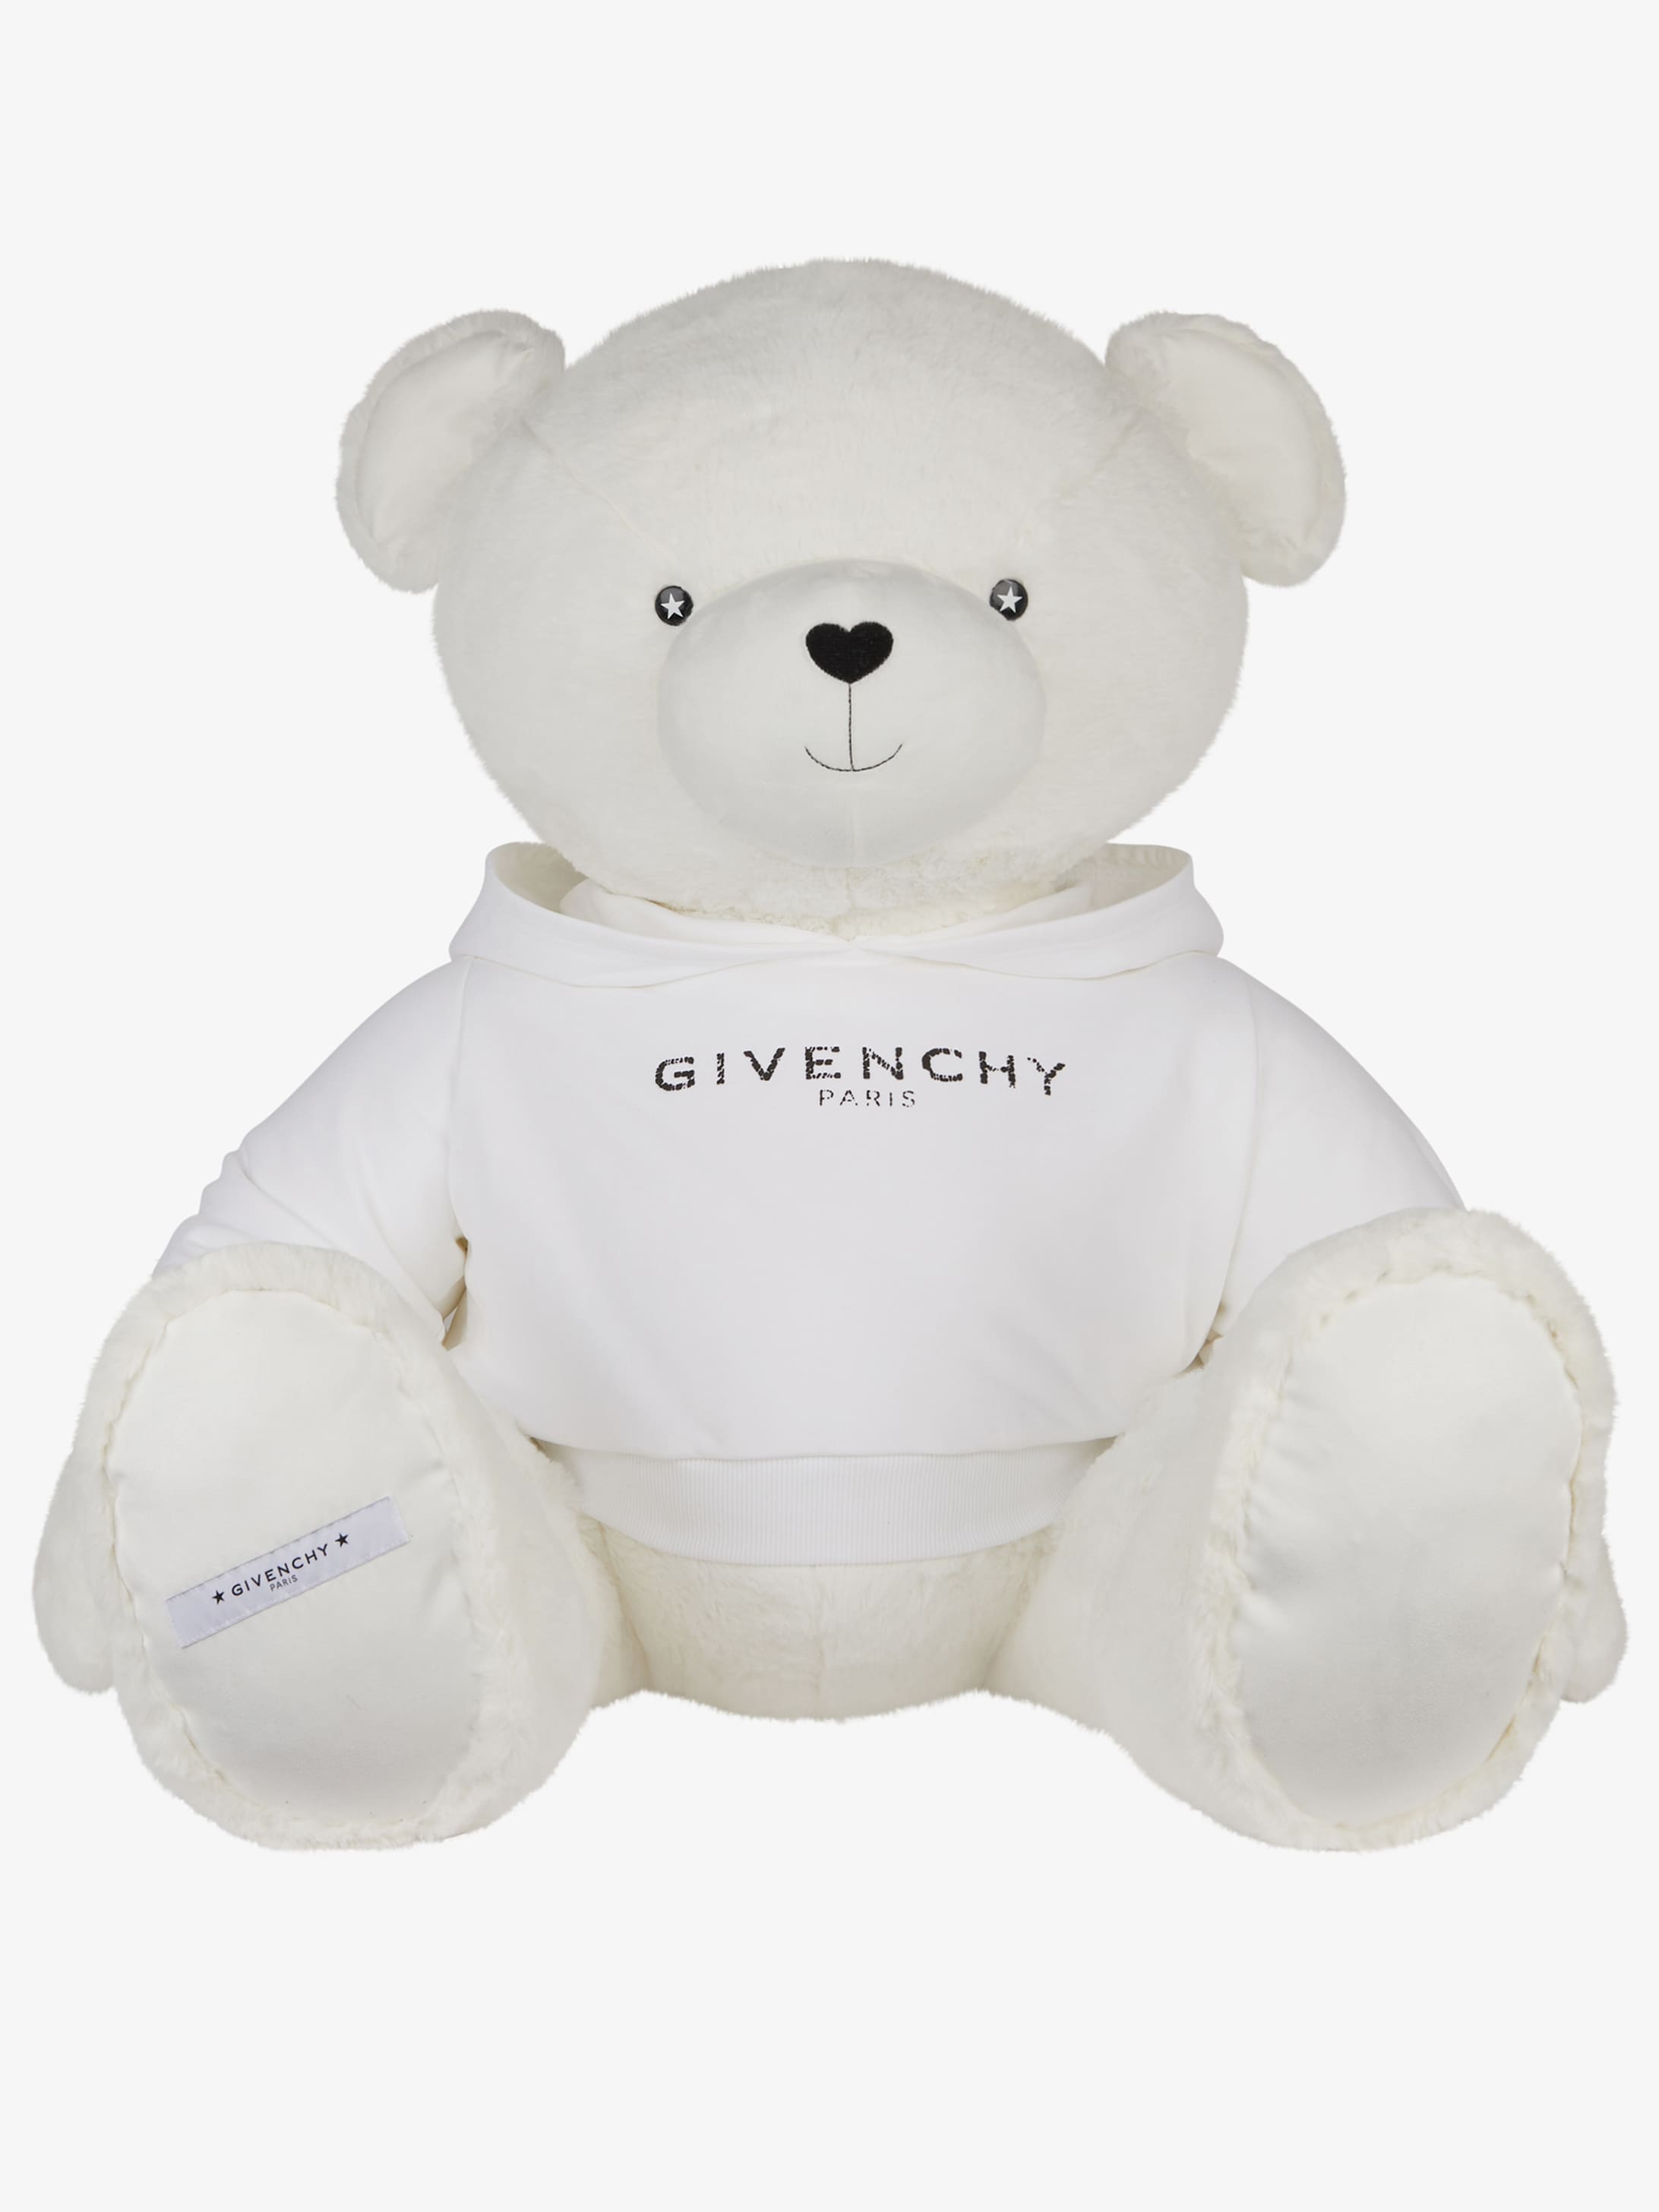 Giant Teddy bear GIVENCHY PARIS 